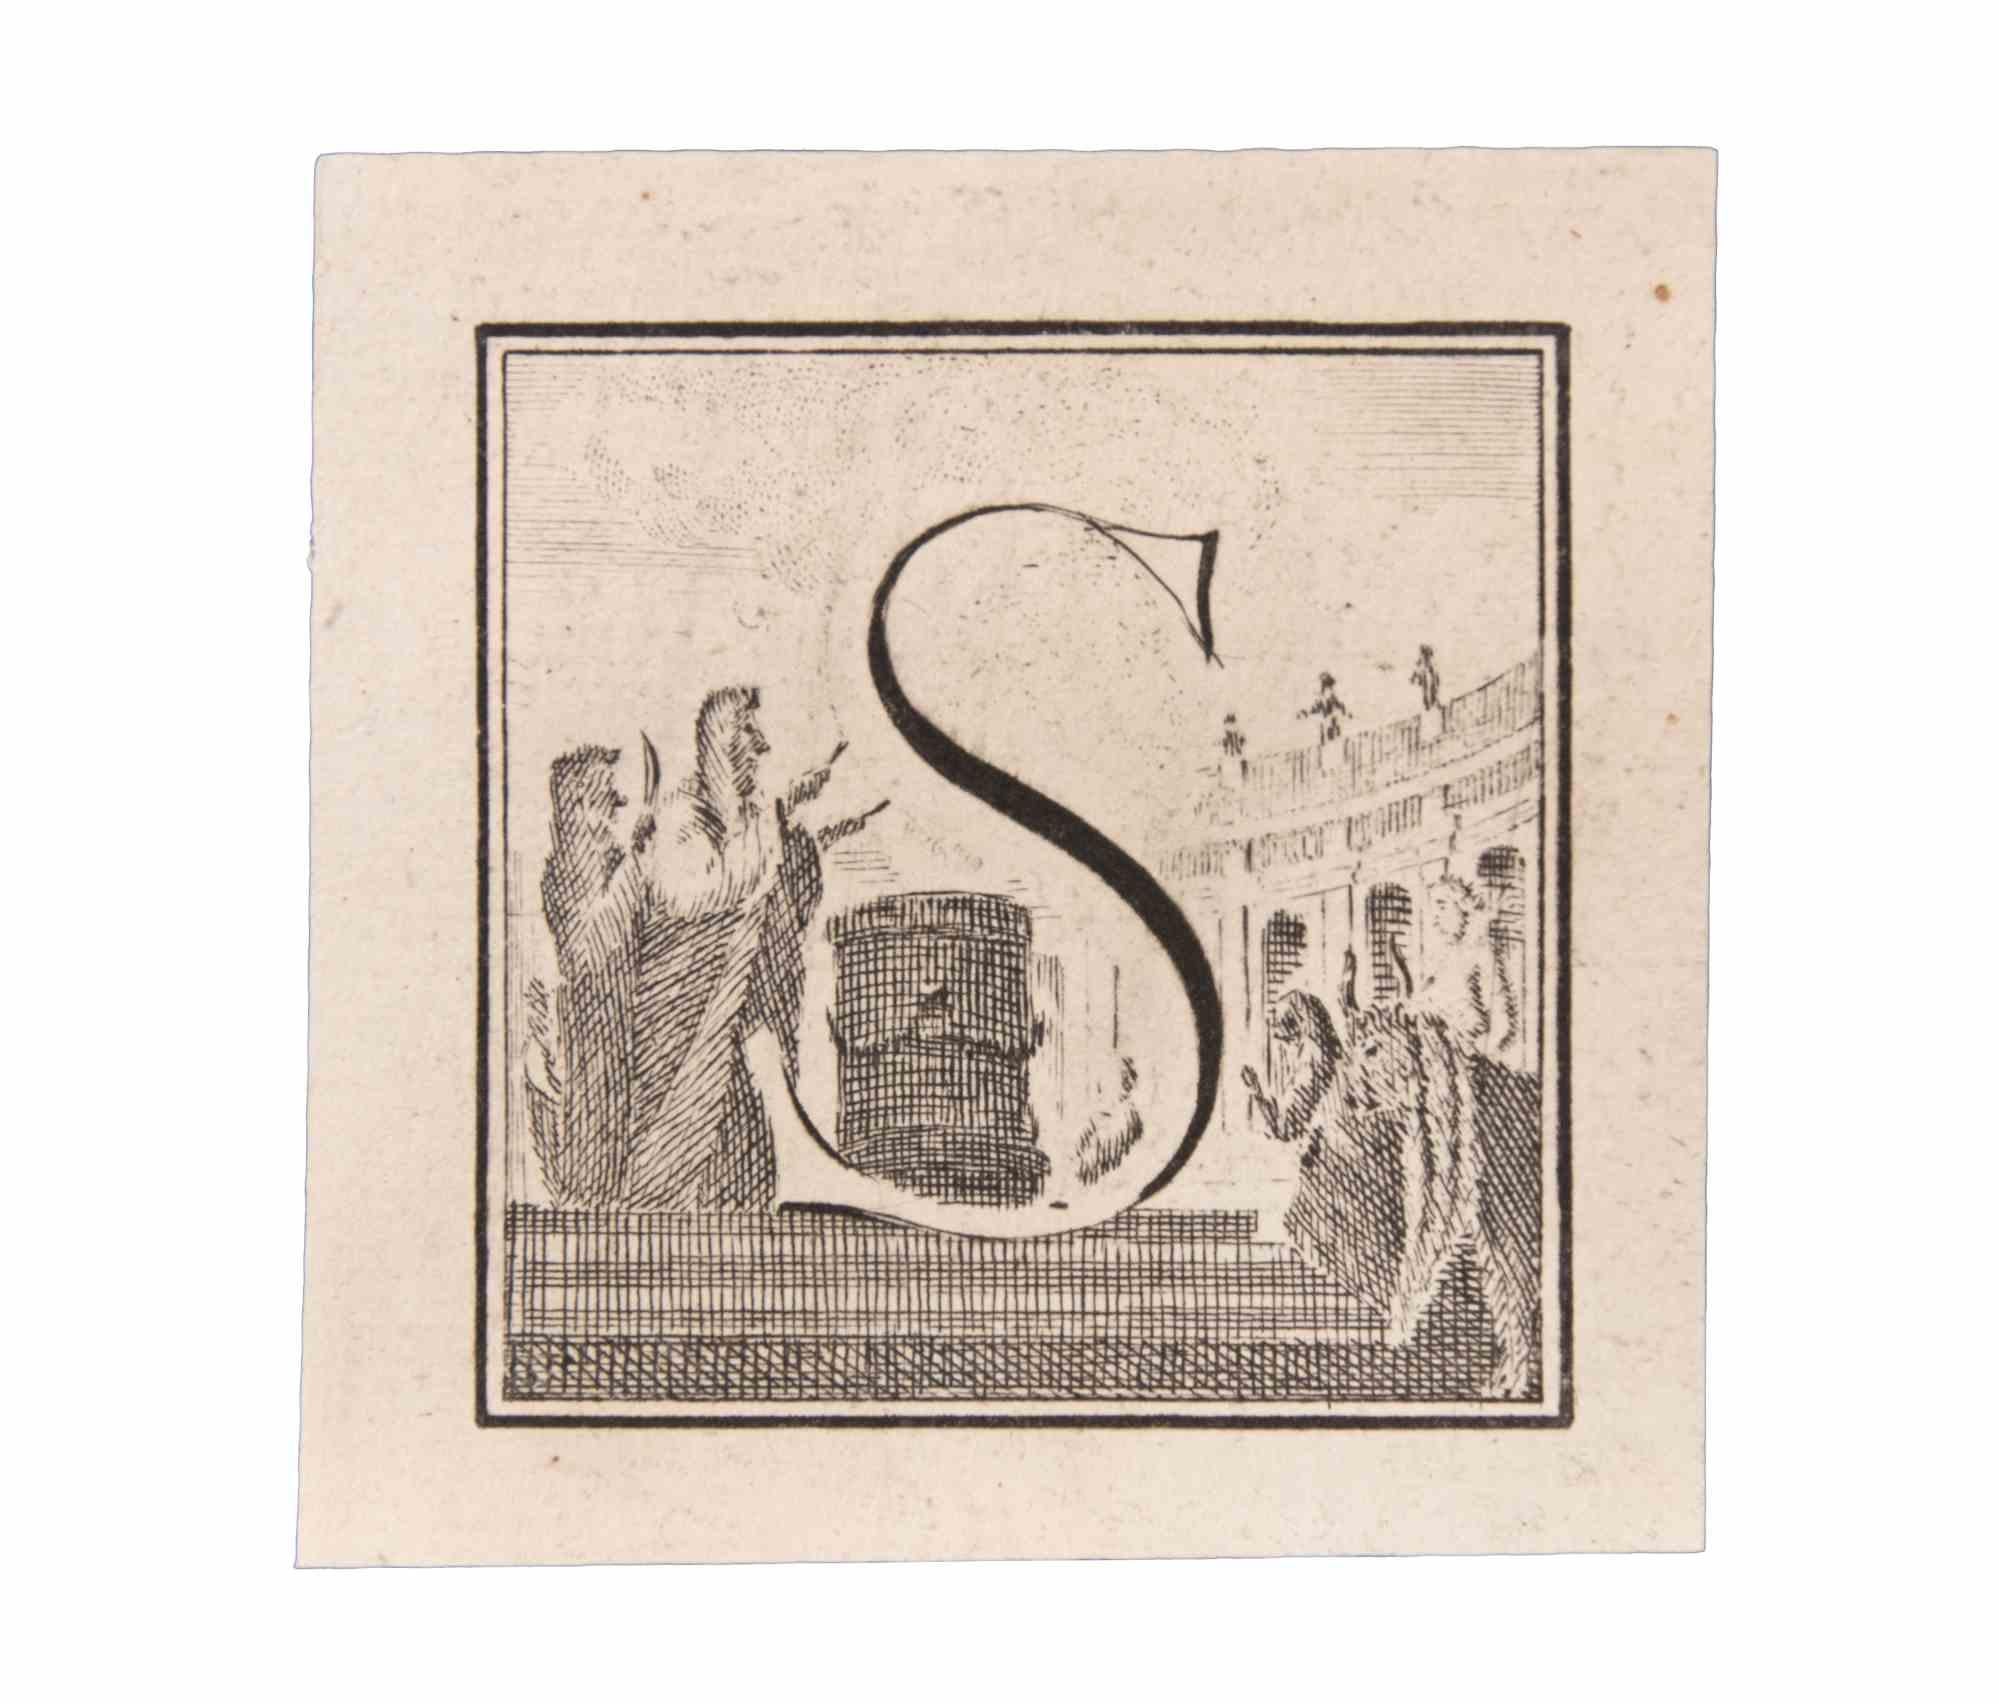 La lettre S est une gravure réalisée par Luigi Vanvitelli artiste du 18ème siècle.

La gravure appartient à la suite d'estampes "Antiquités d'Herculanum exposées" (titre original : "Le Antichità di Ercolano Esposte"), un volume de huit gravures des